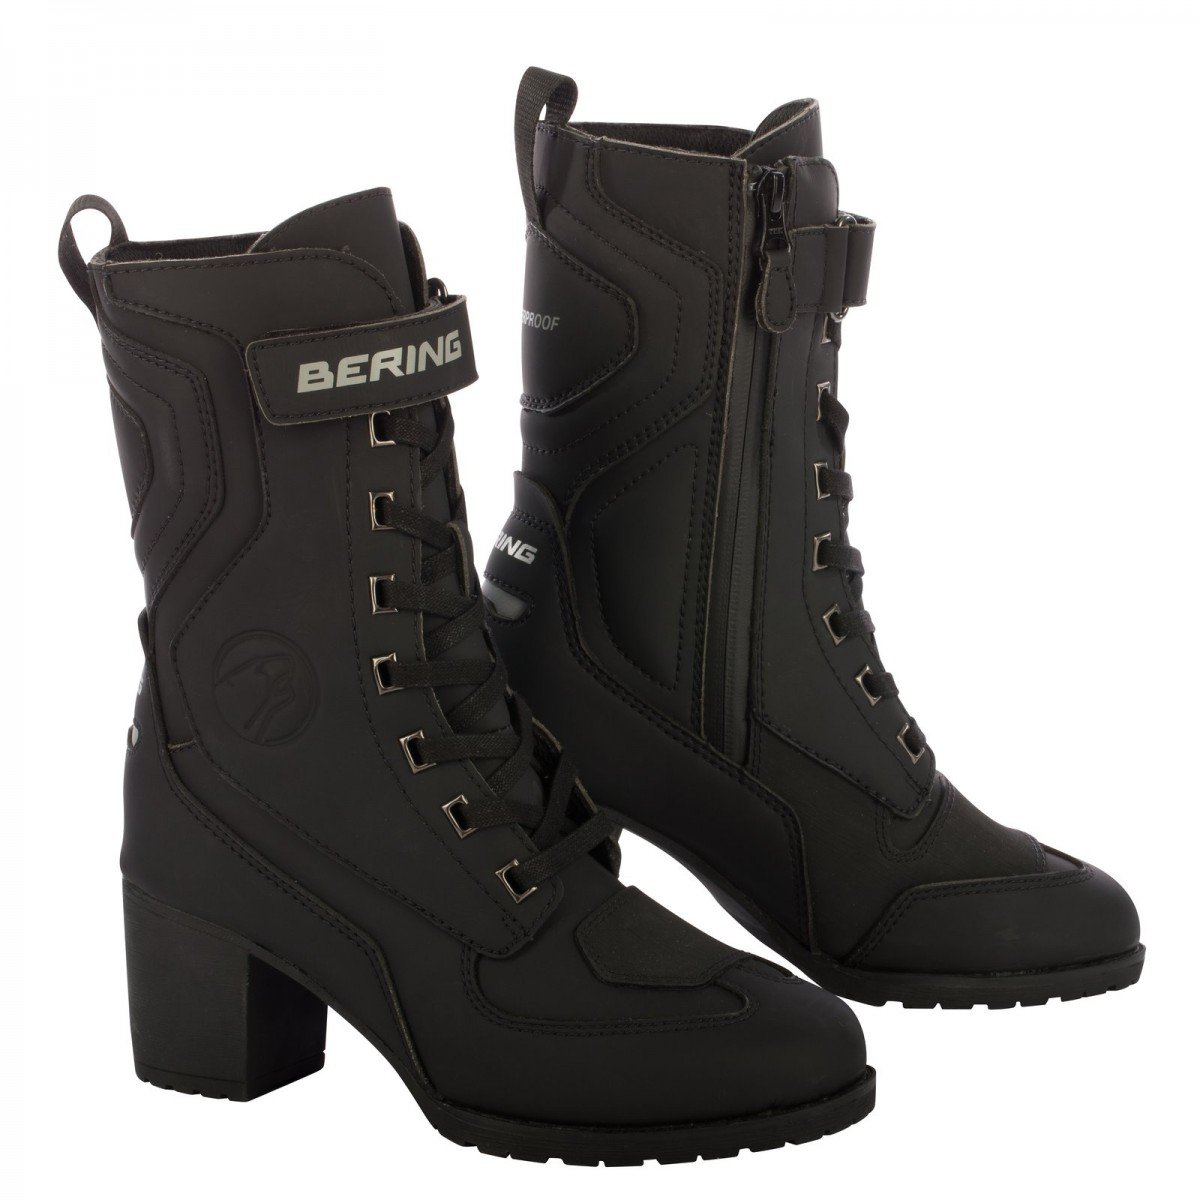 Image of Bering Lady Leonarda 2 Shoes Black Size 36 ID 3660815165263